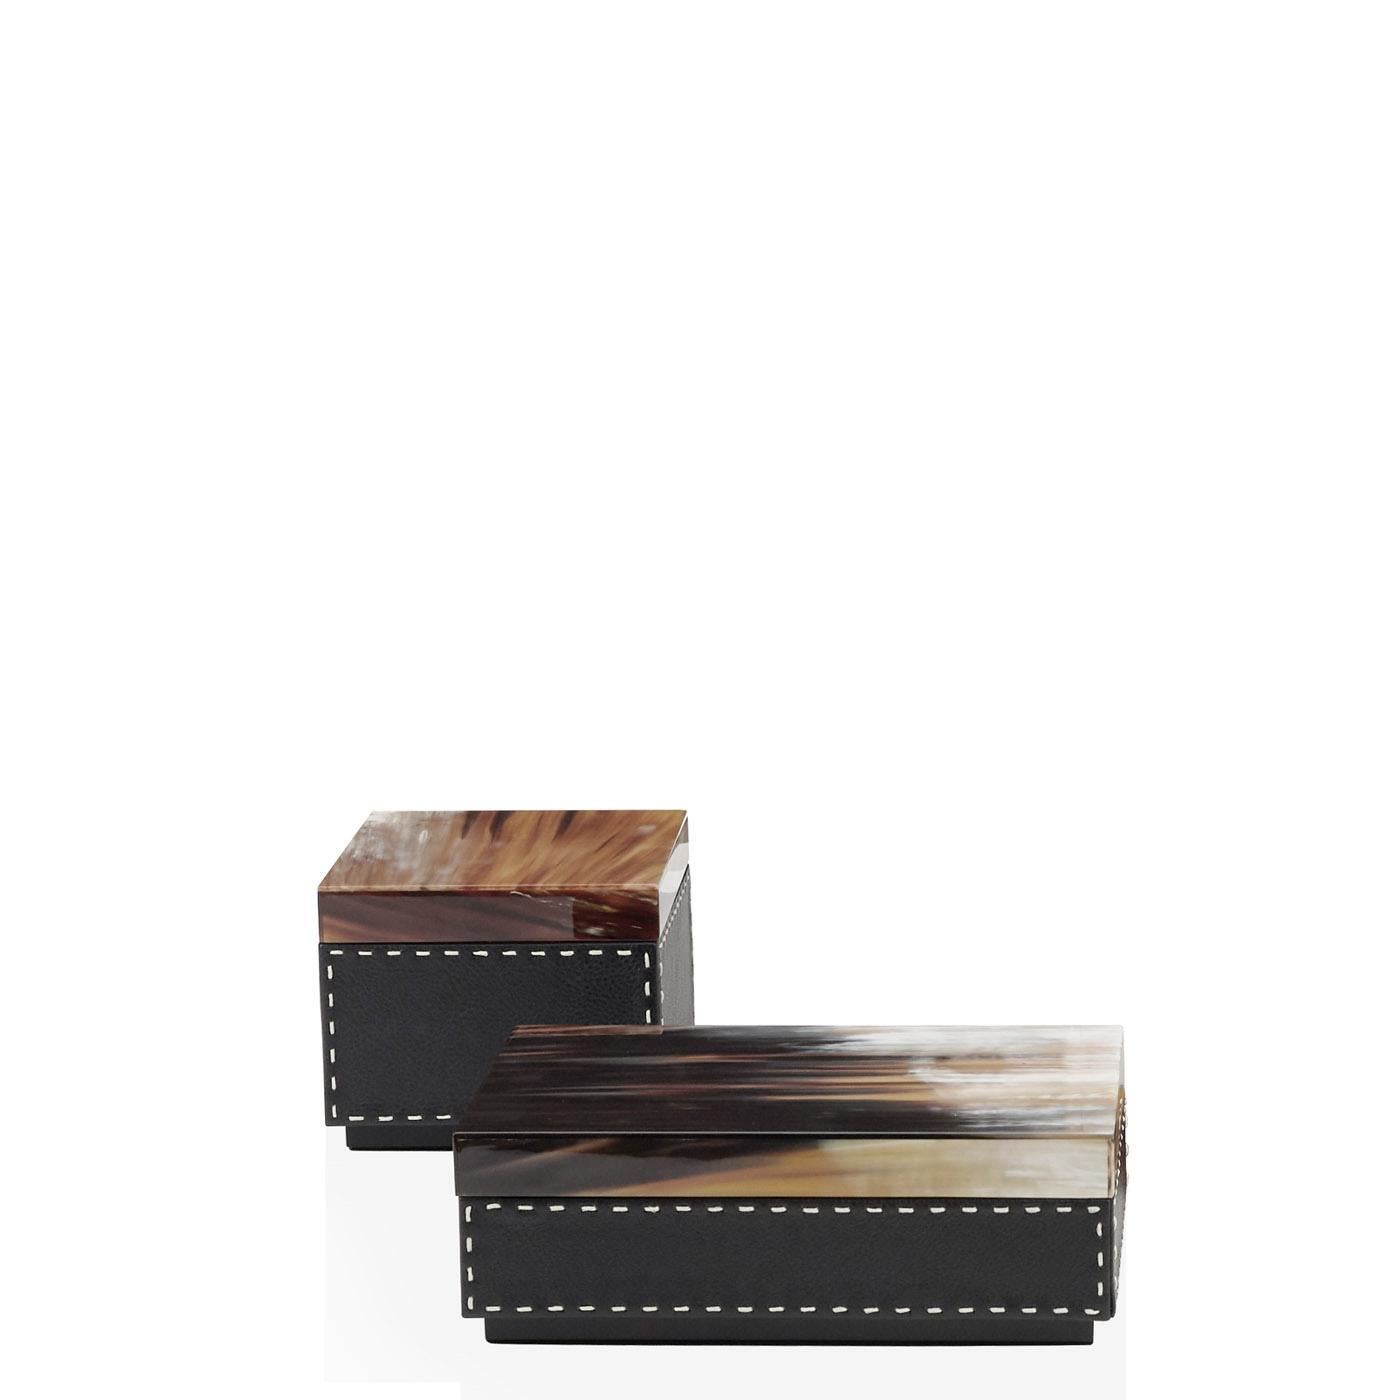 Ottavia Box in Pebbled Leather with Lid in Corno Italiano, Mod. 4469 In New Condition For Sale In Recanati, Macerata